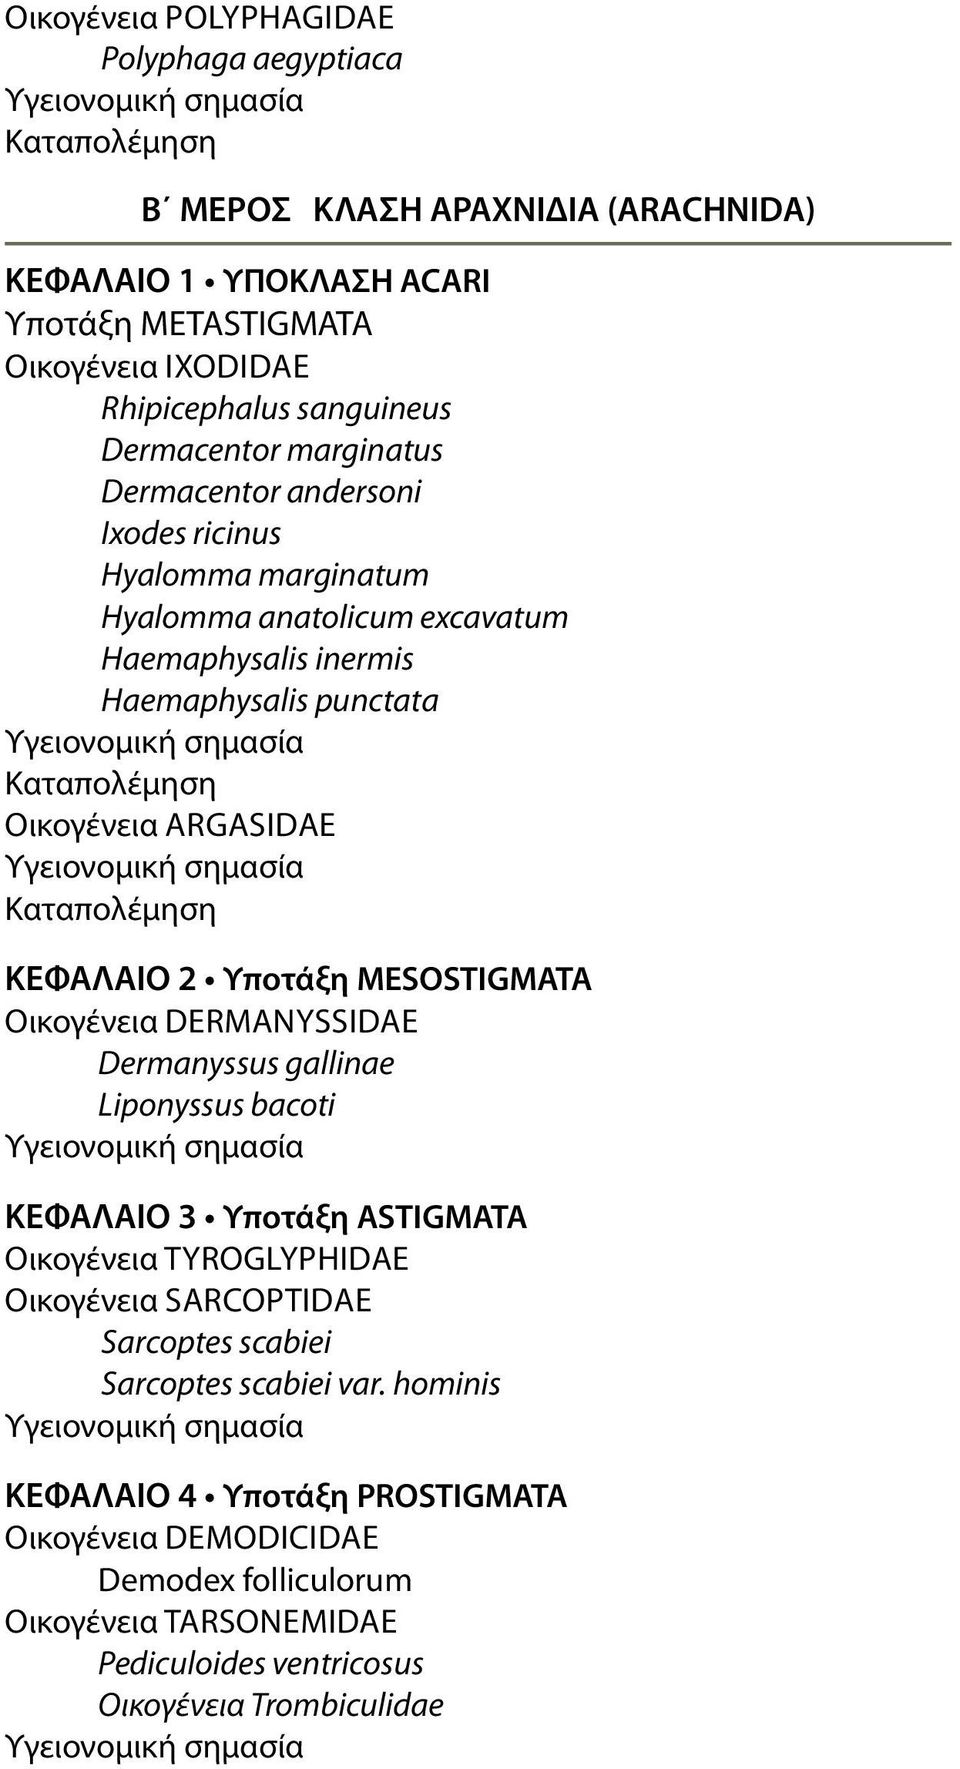 ΚΕΦΑΛΑΙΟ 2 Υποτάξη mesostigmata Οικογένεια dermanyssidae Dermanyssus gallinae Liponyssus bacoti ΚΕΦΑΛΑΙΟ 3 Υποτάξη ASTIgmATA Οικογένεια tyroglyphidae Οικογένεια sarcoptidae